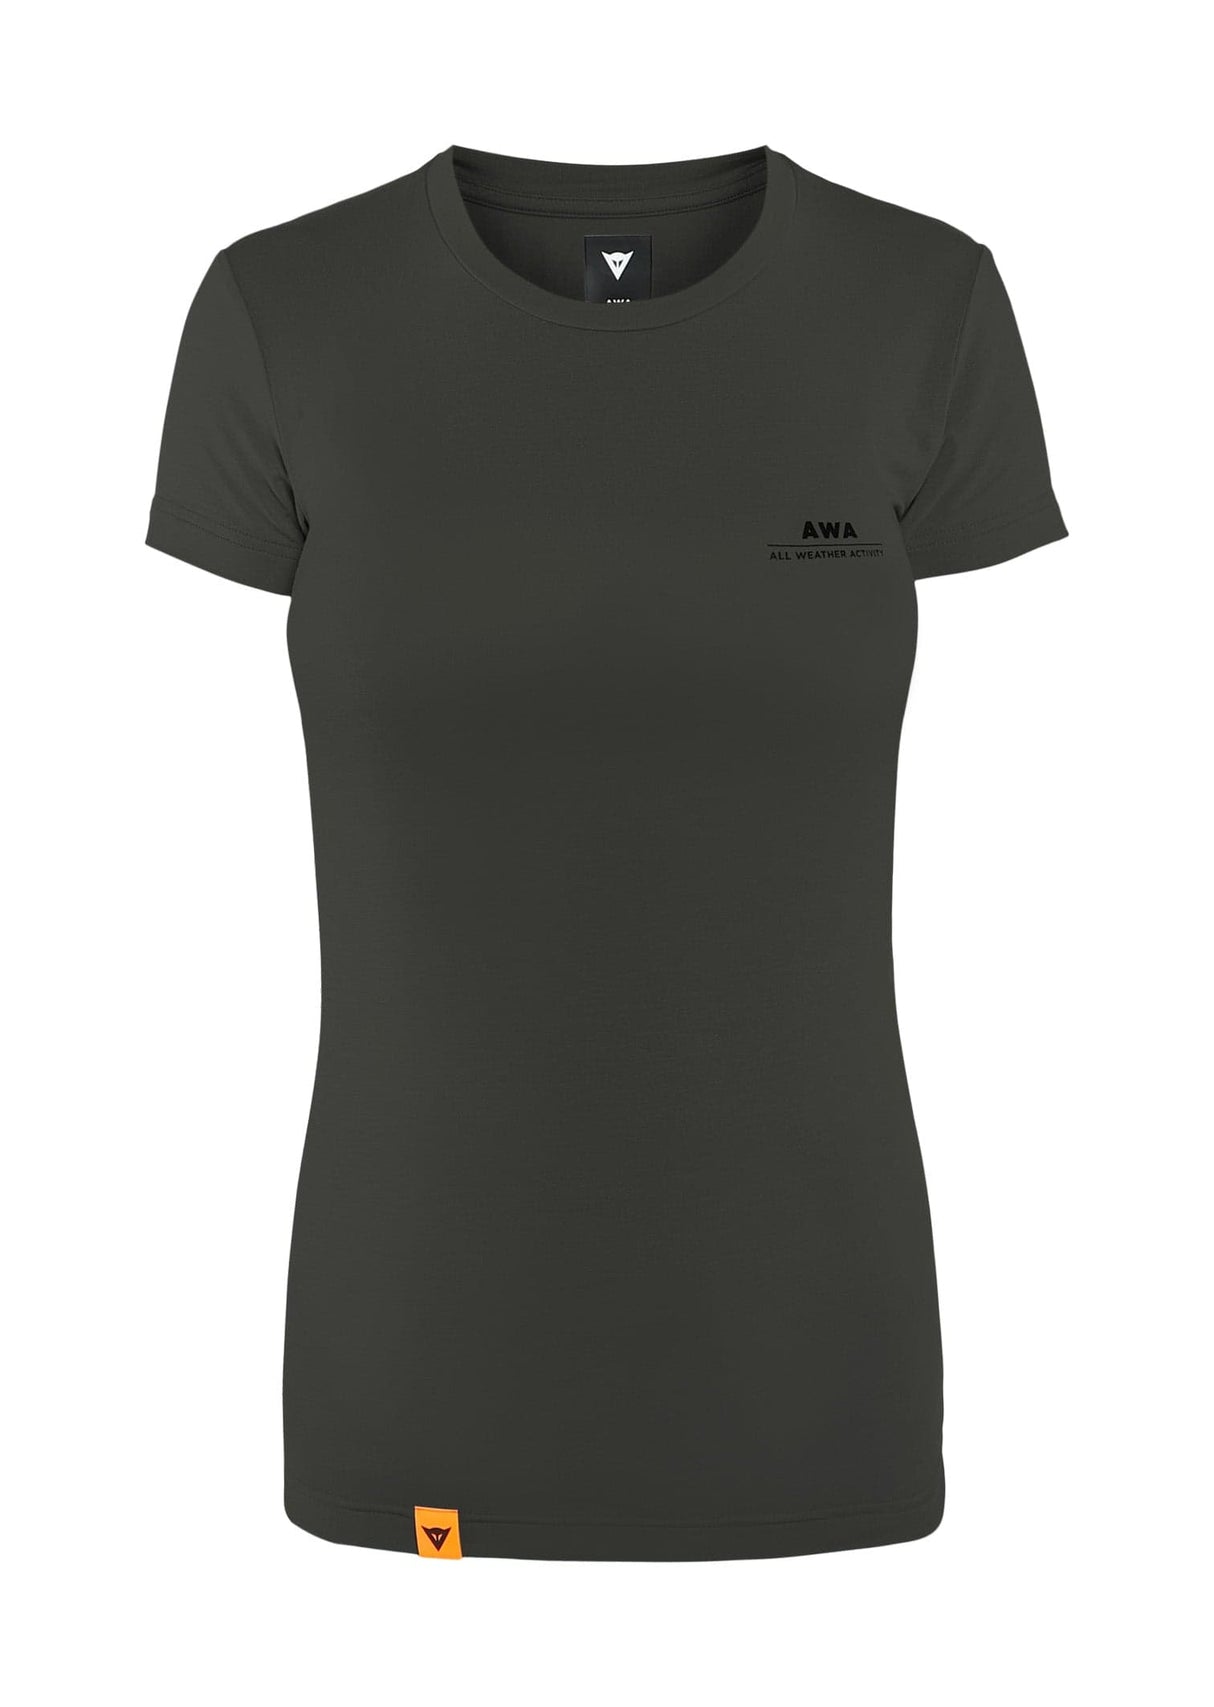 Dainese AWA BLACK Womens Tee T-Shirt (Black, S)